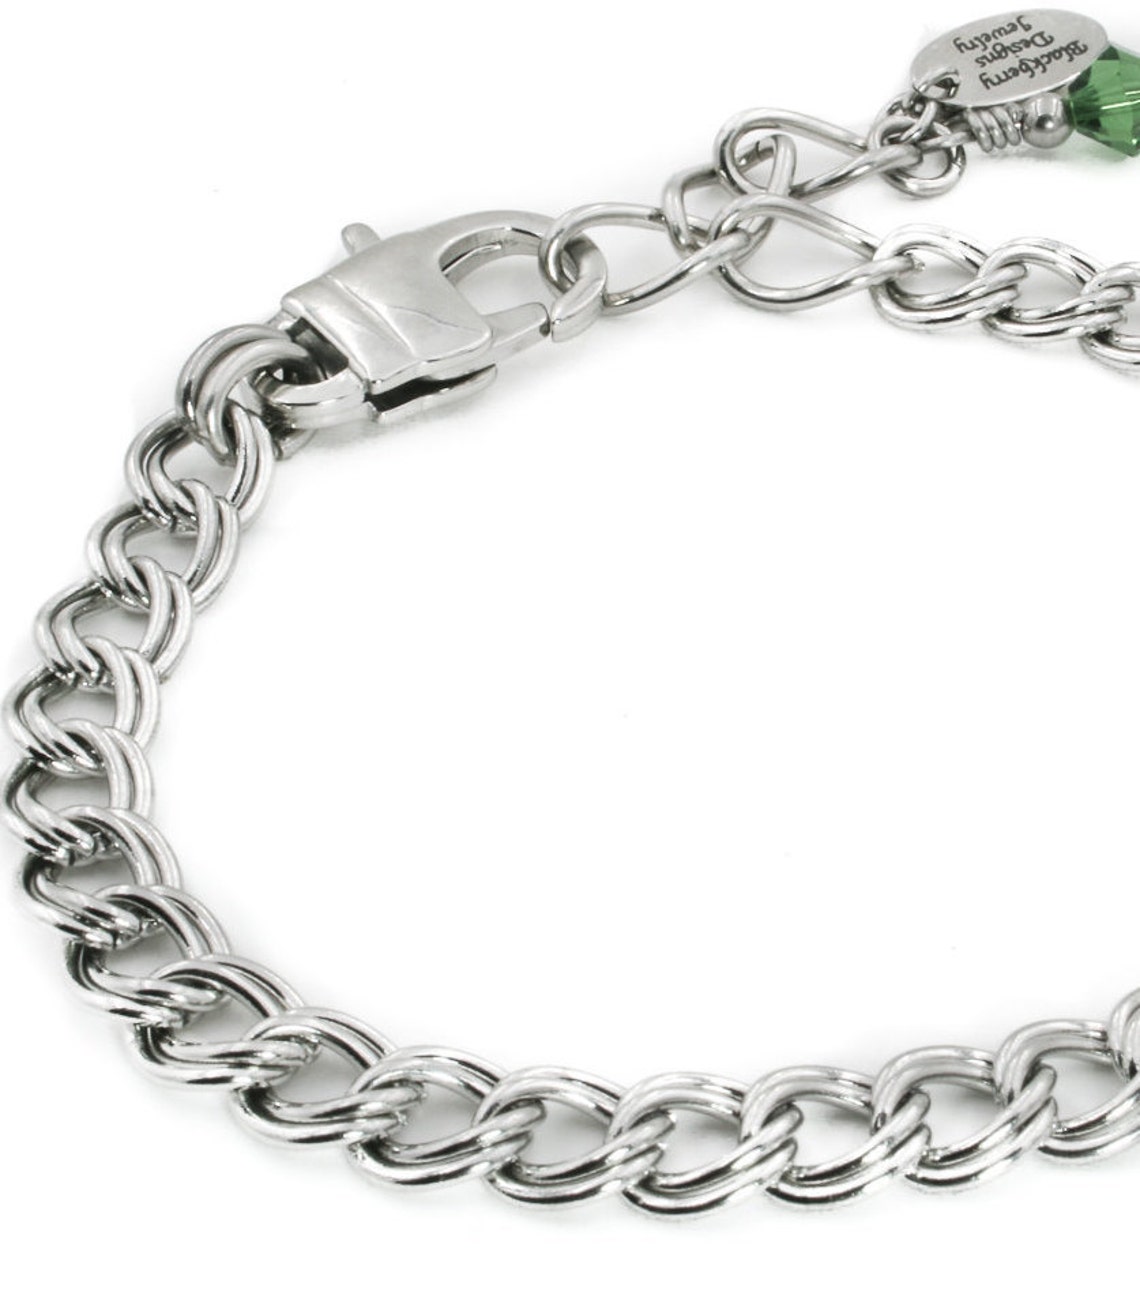 Stainless Steel Charm Bracelet Starter Charm Bracelet Heart | Etsy